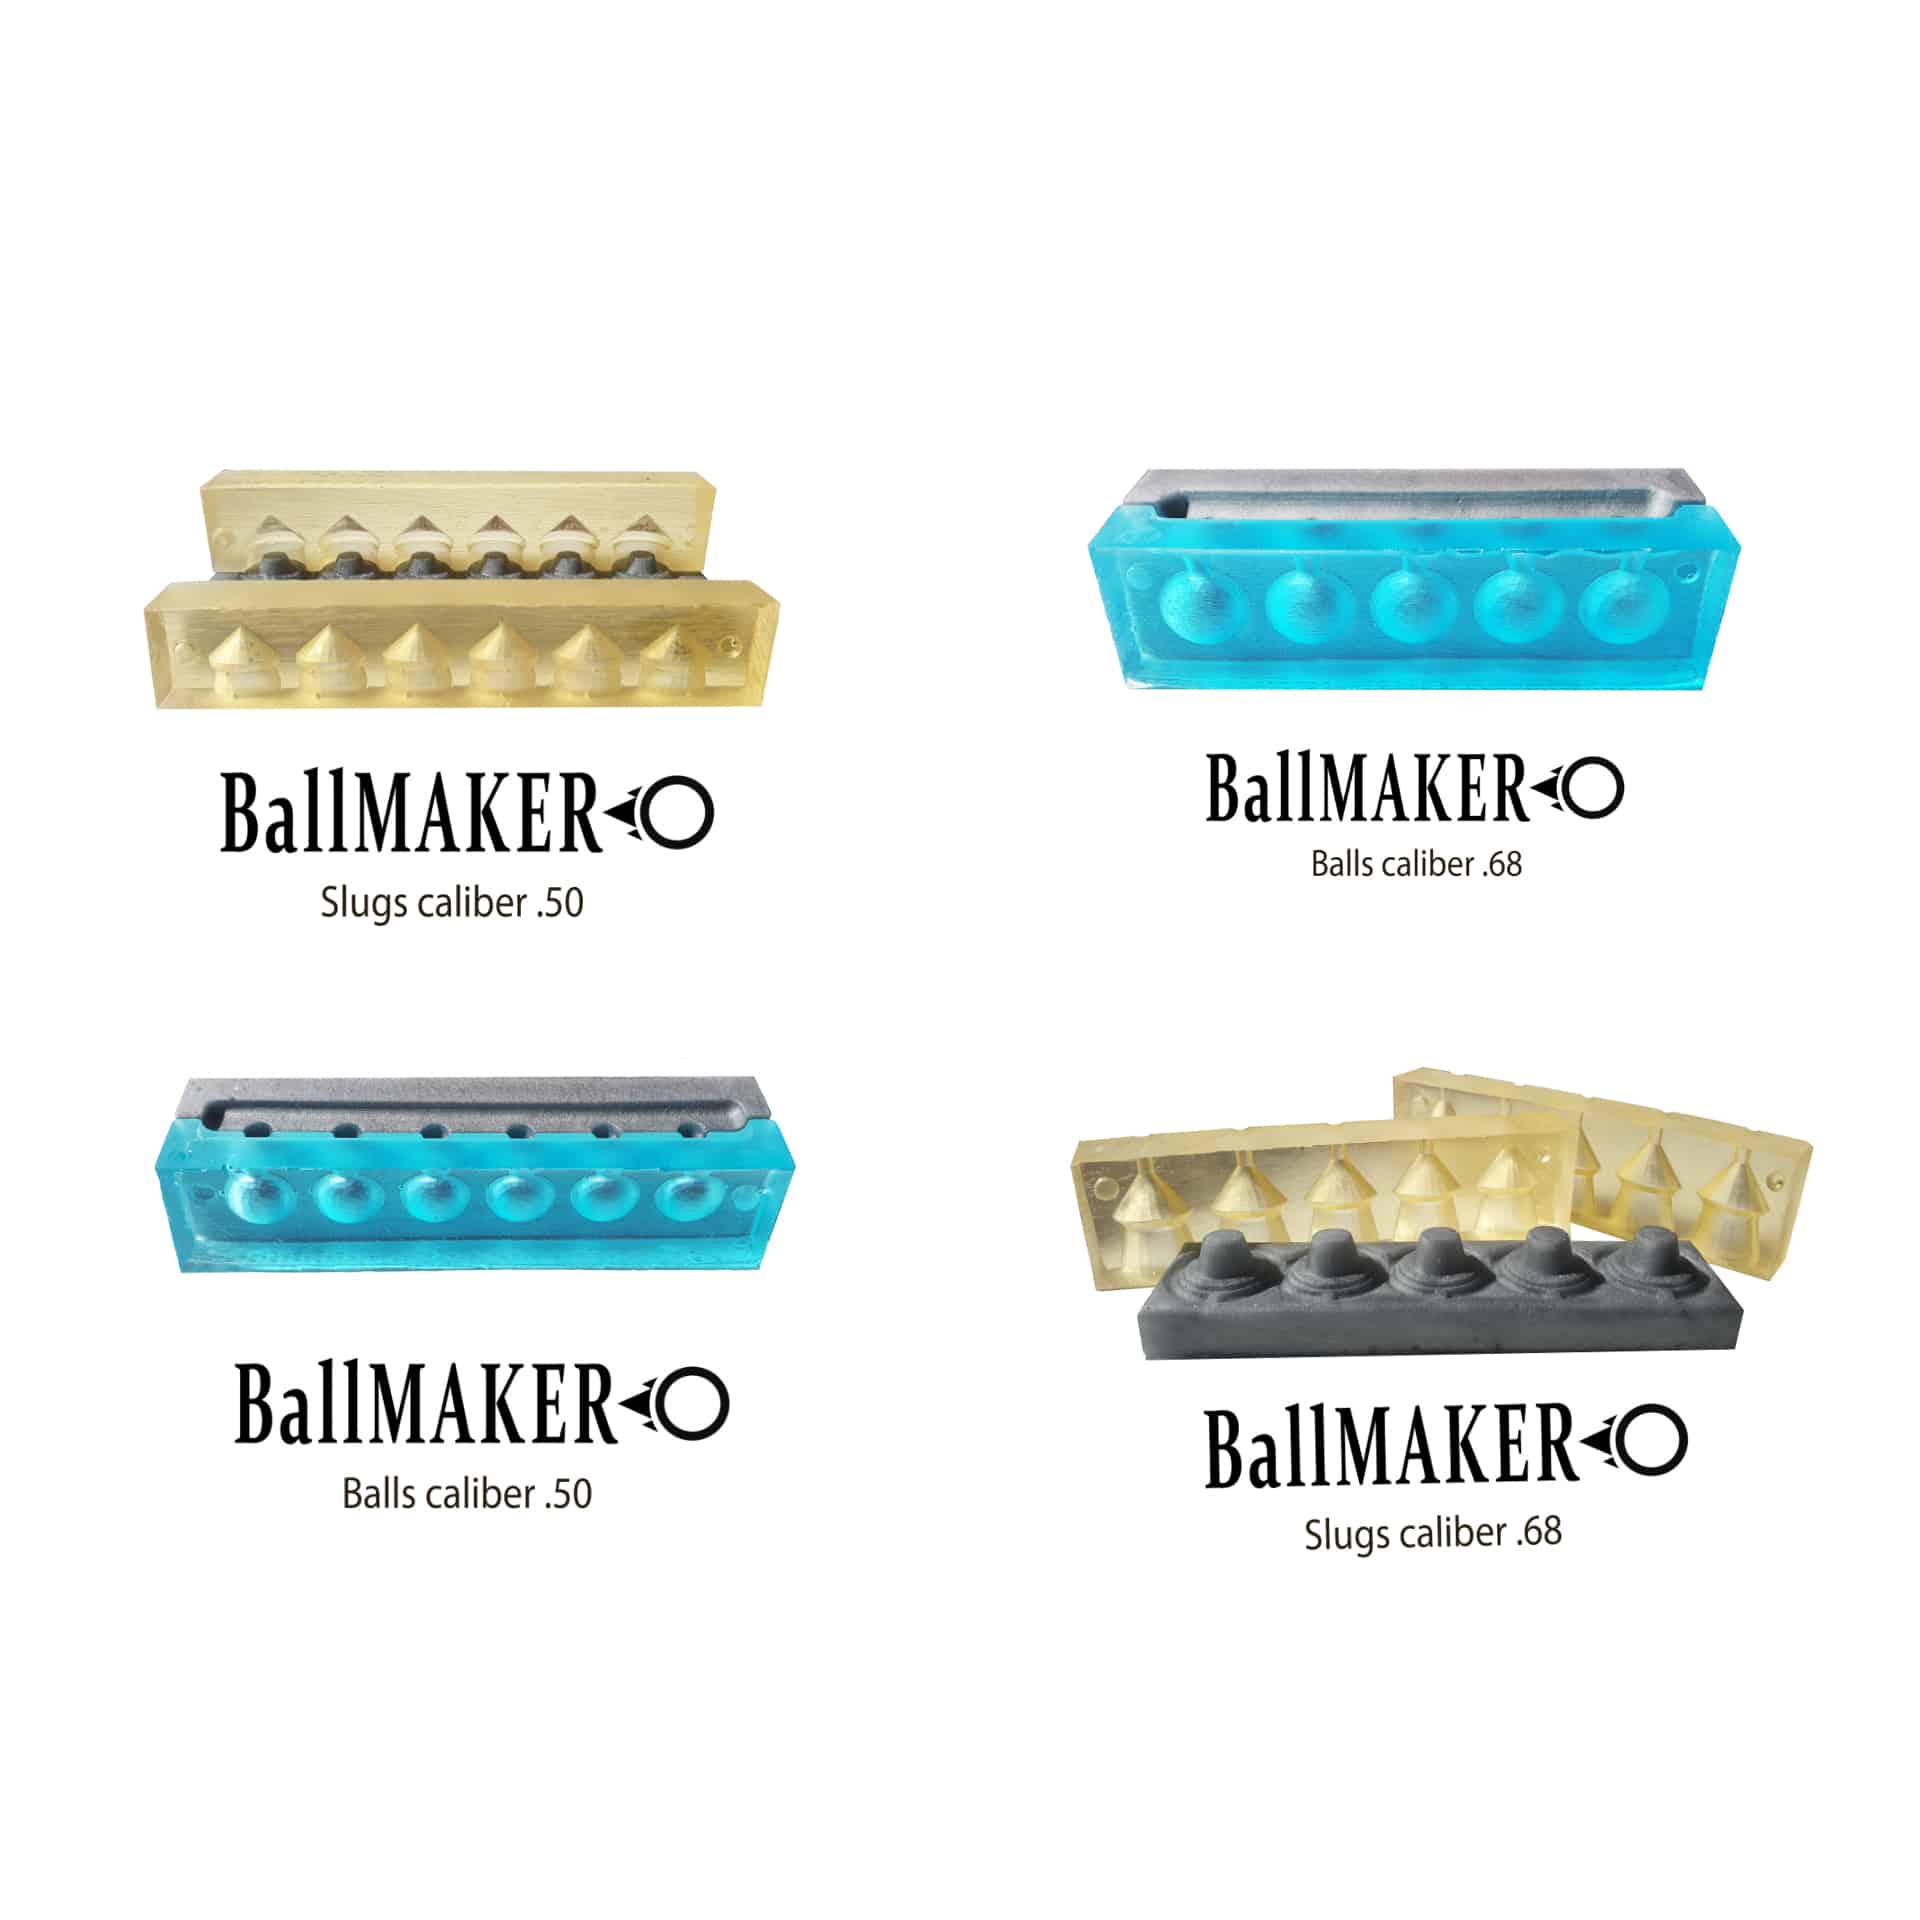 Ballmaker mold for making Balls cal 50 for HDR 50 RAM cheaper than gumiballe 